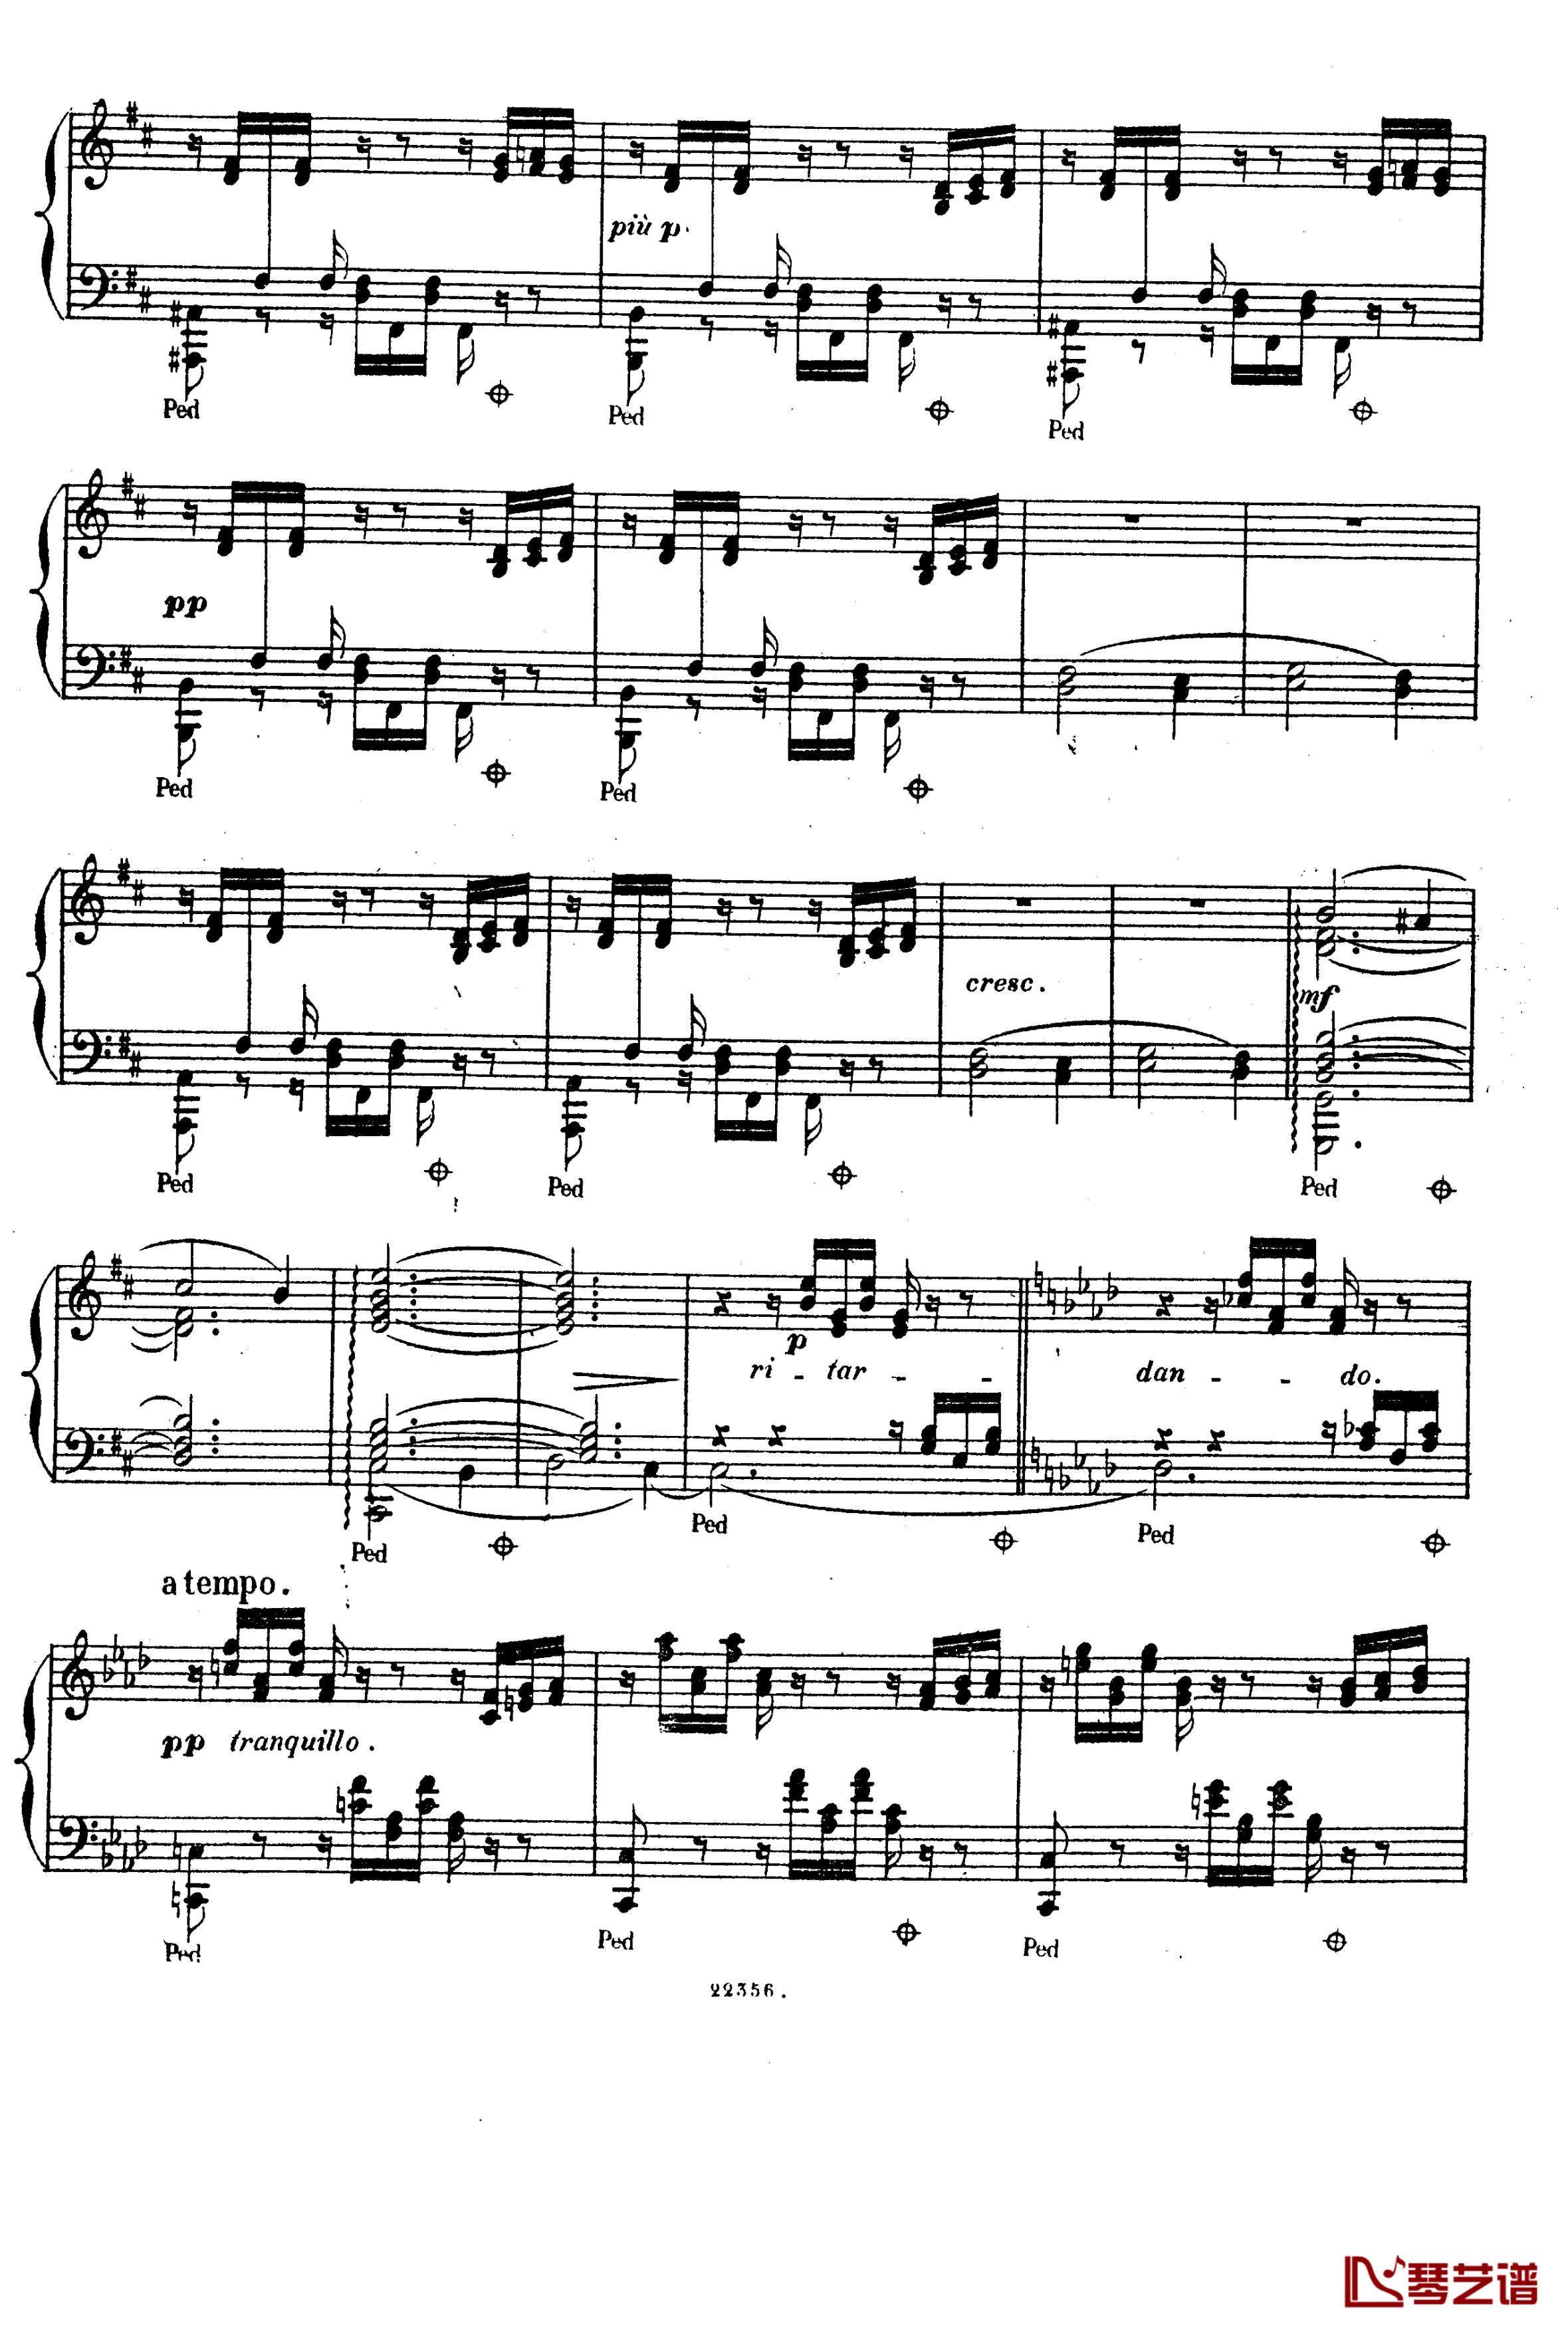  前奏曲与赋格 Op.6钢琴谱-斯甘巴蒂3